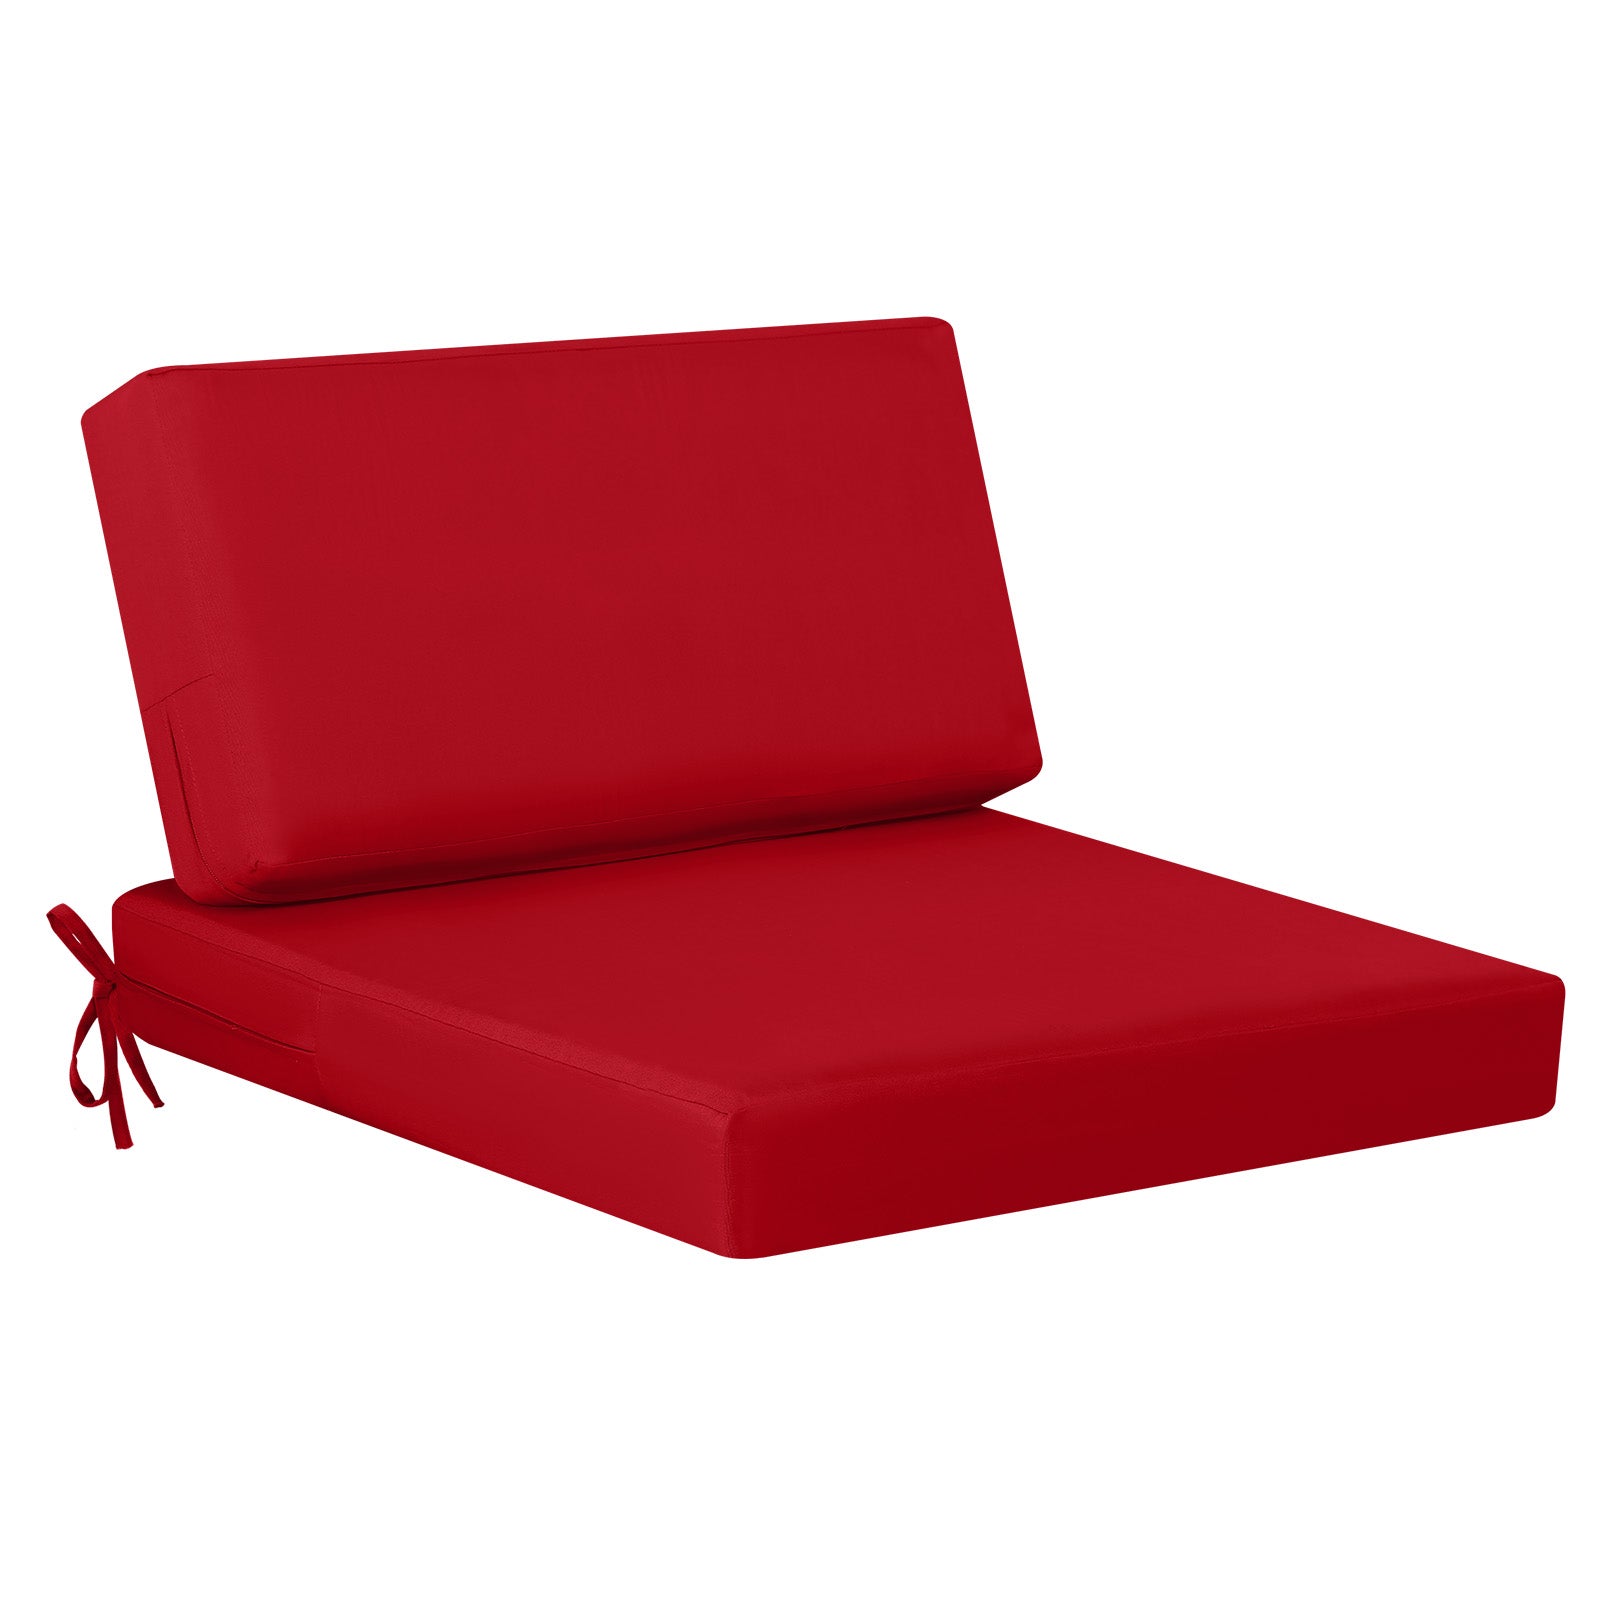 idee-home Deep Seat Patio Cushions